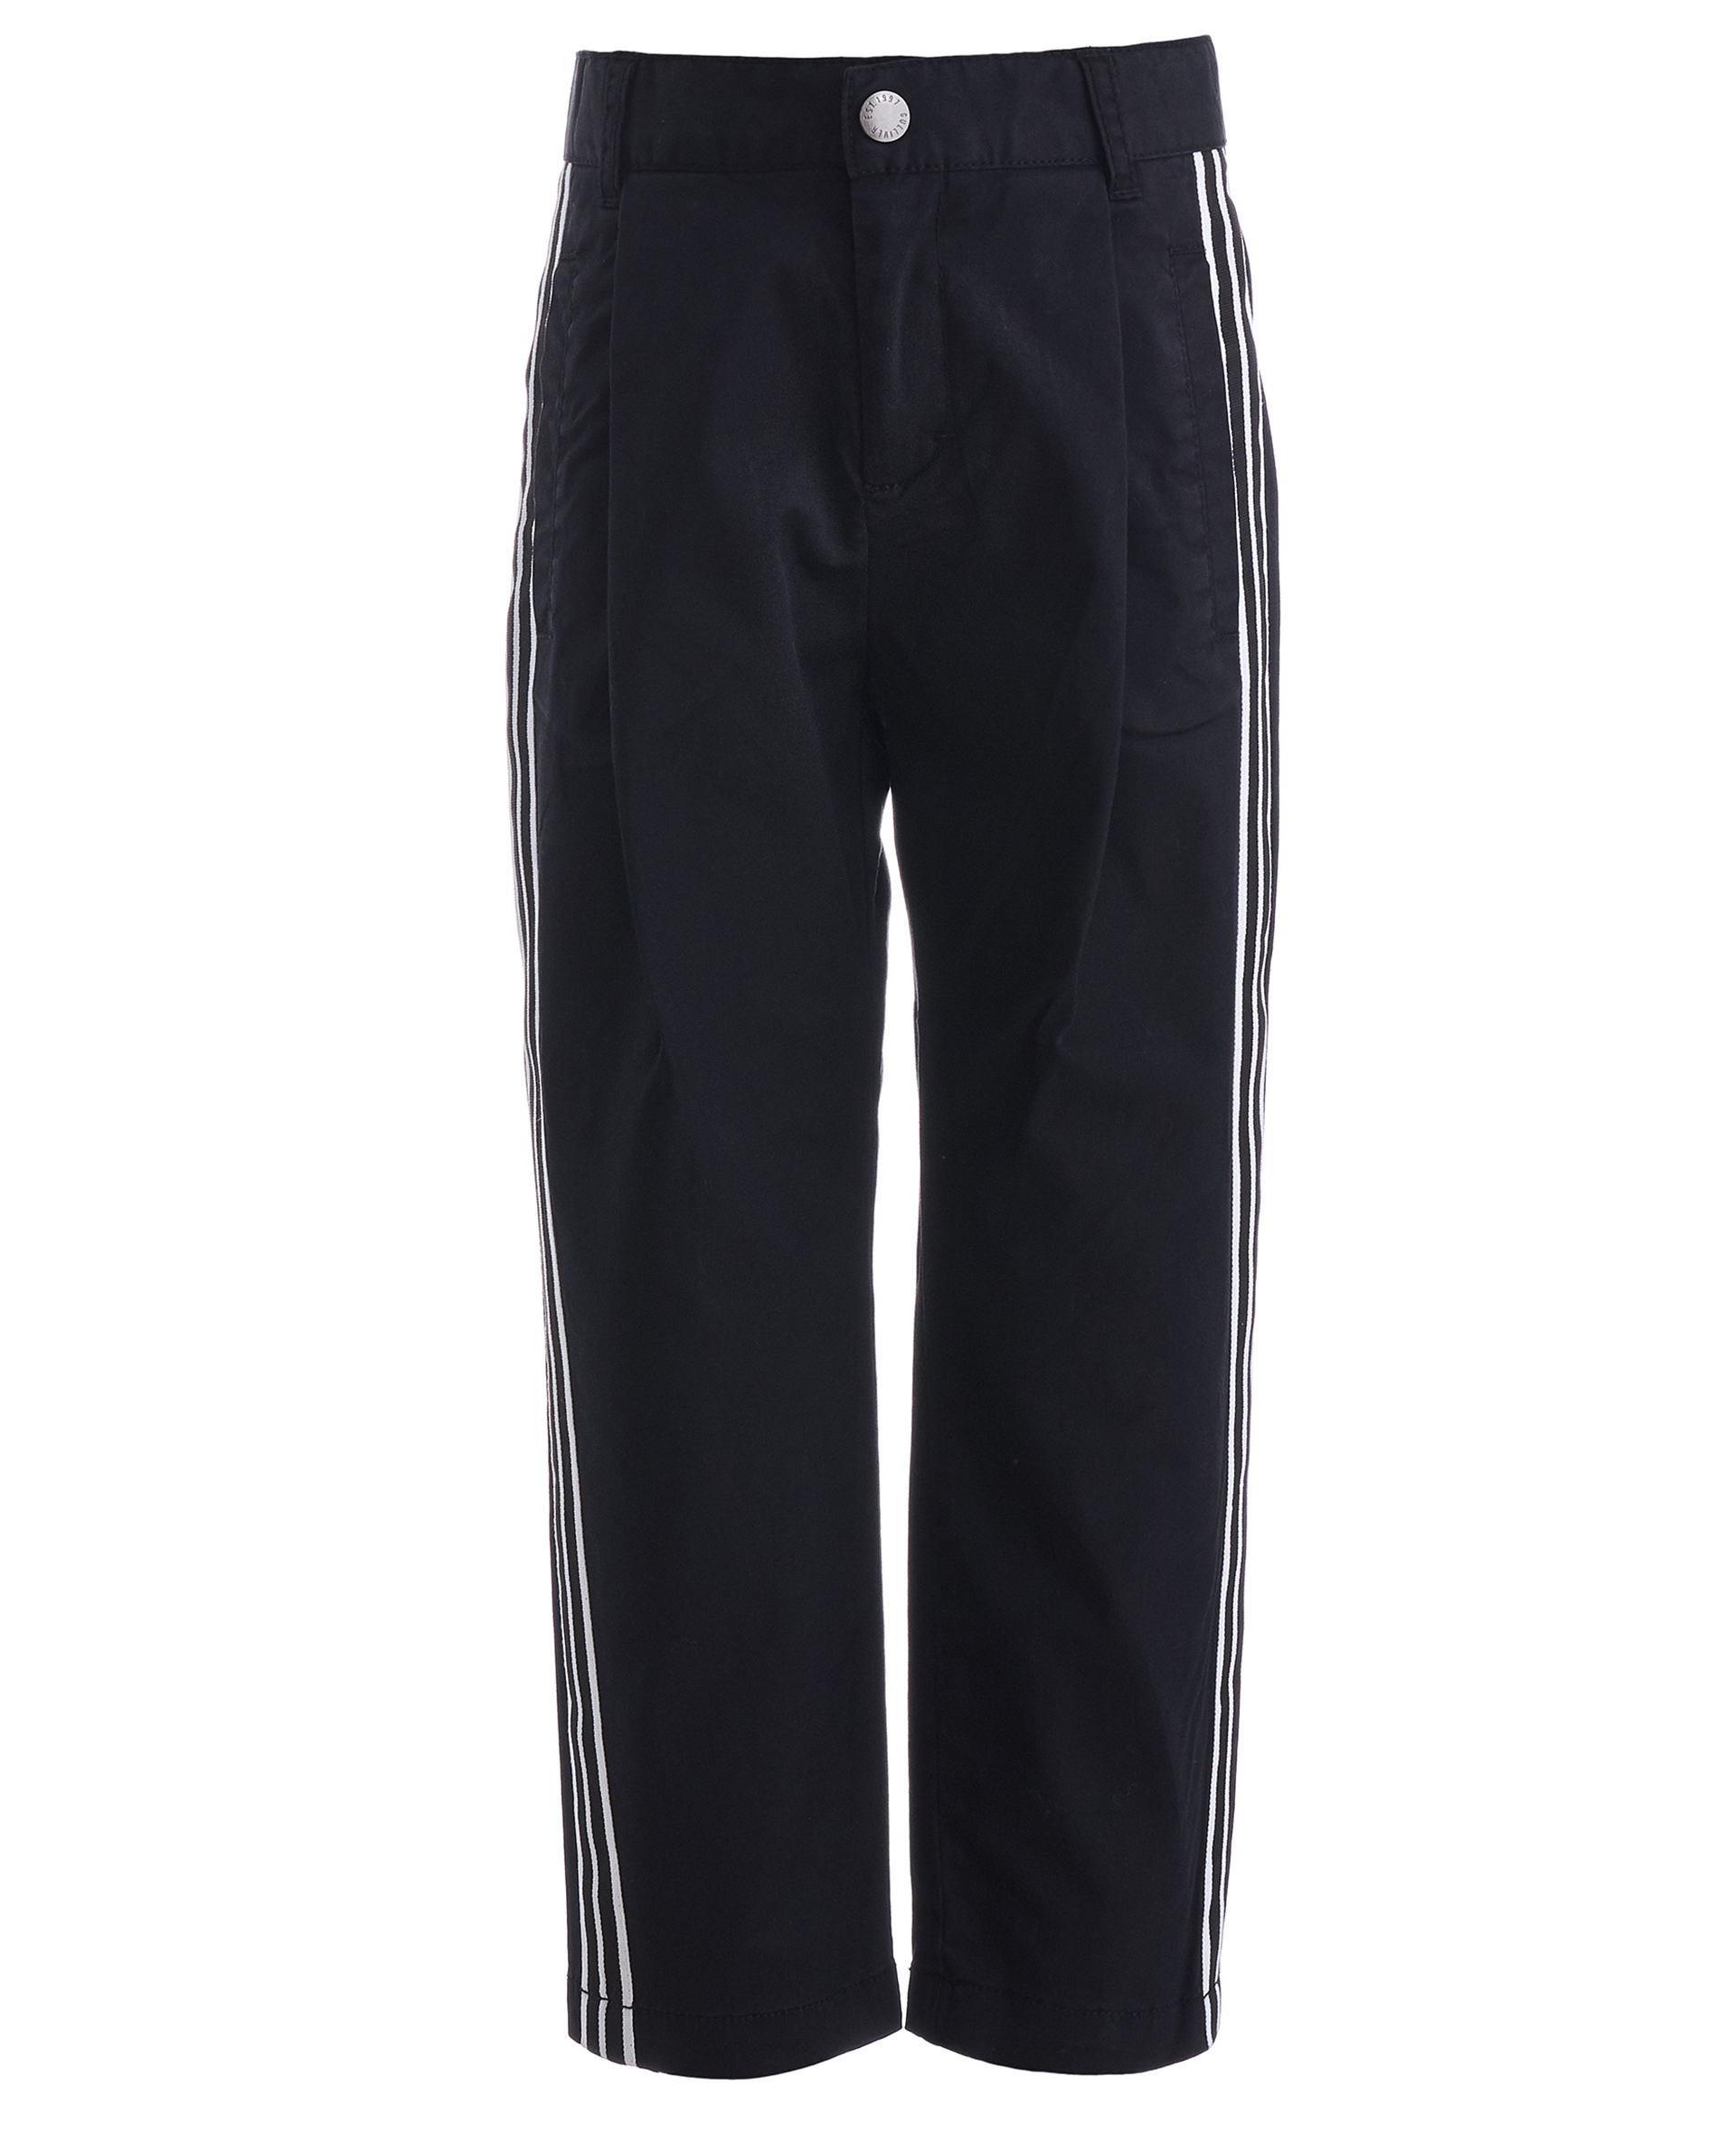 Черные брюки с лампасами Gulliver 11905BMC6301, размер 98, цвет черный - фото 1